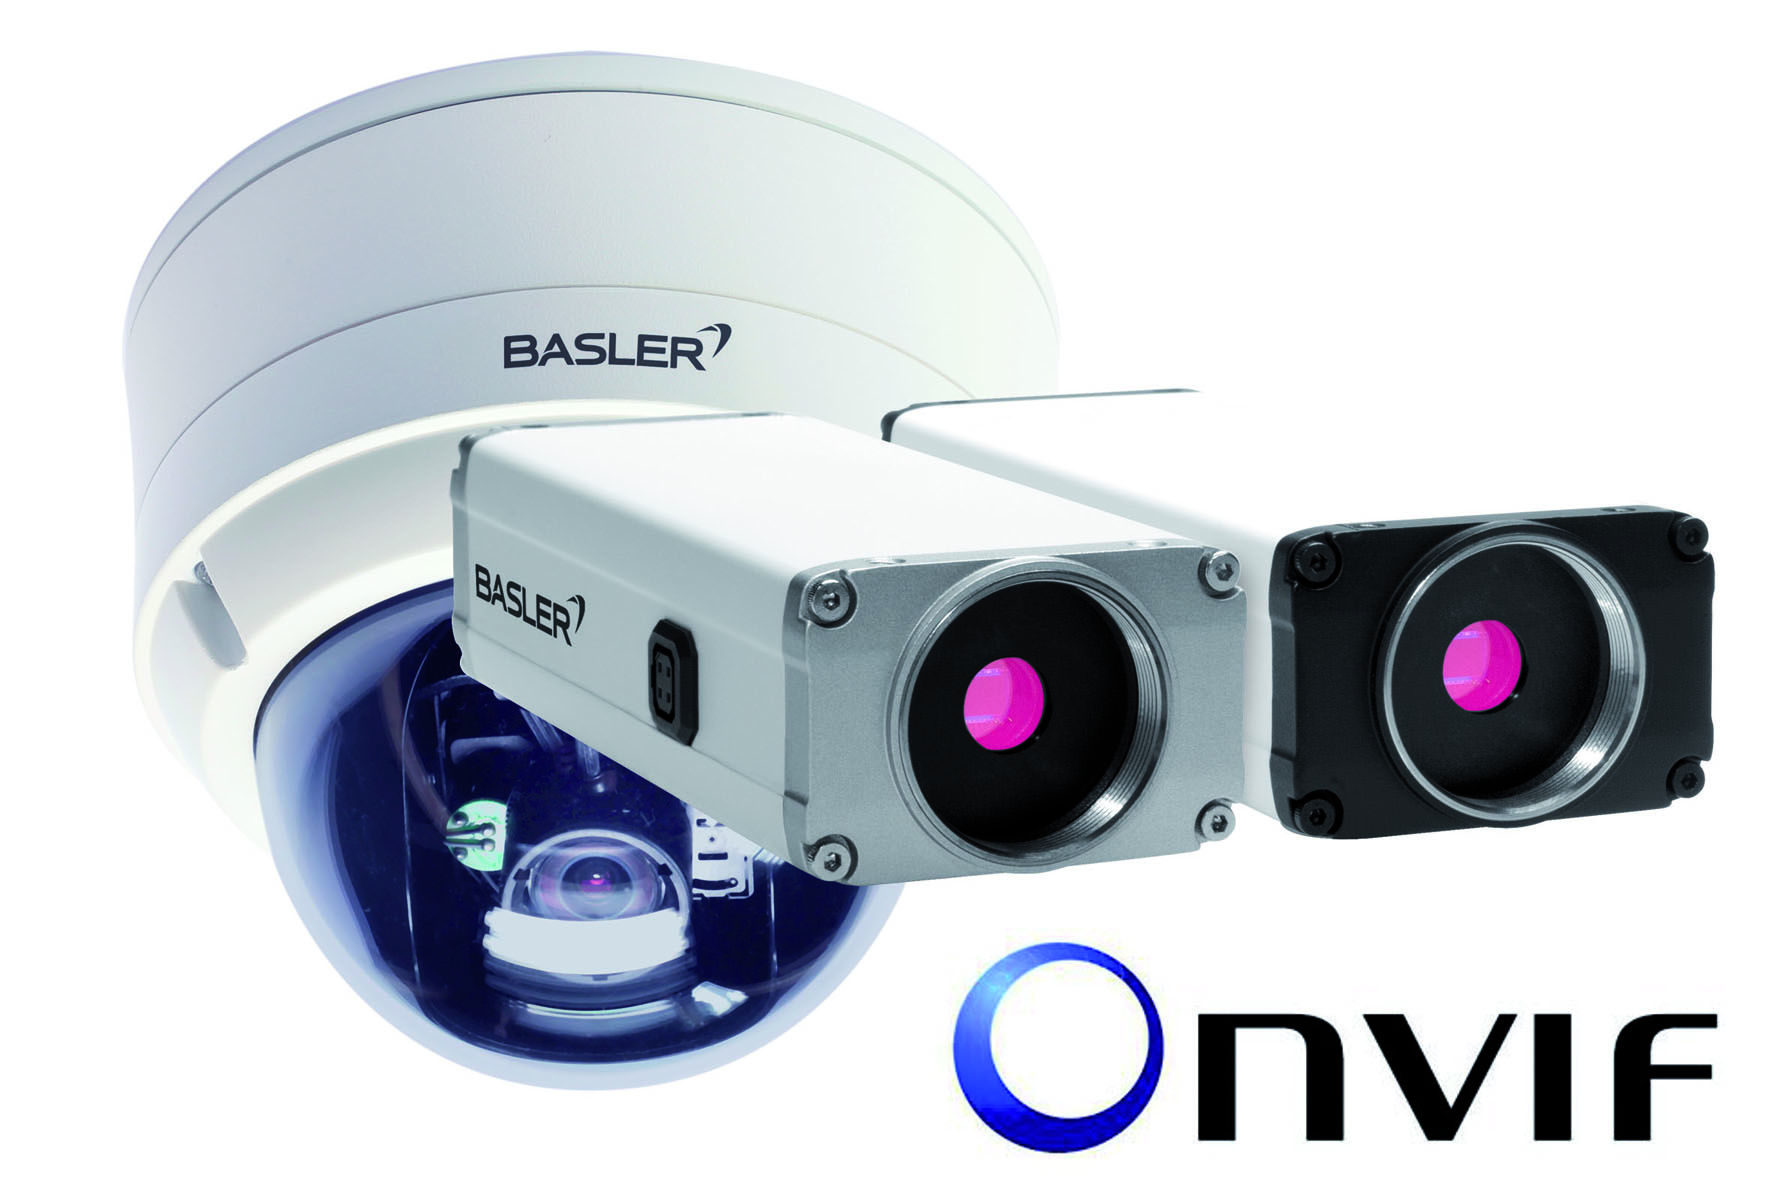 กล้องวงจรปิด CCTV บทความ บริษัท ONVIF ประกาศเพิ่มระดับของโครงสร้างสมาชิก